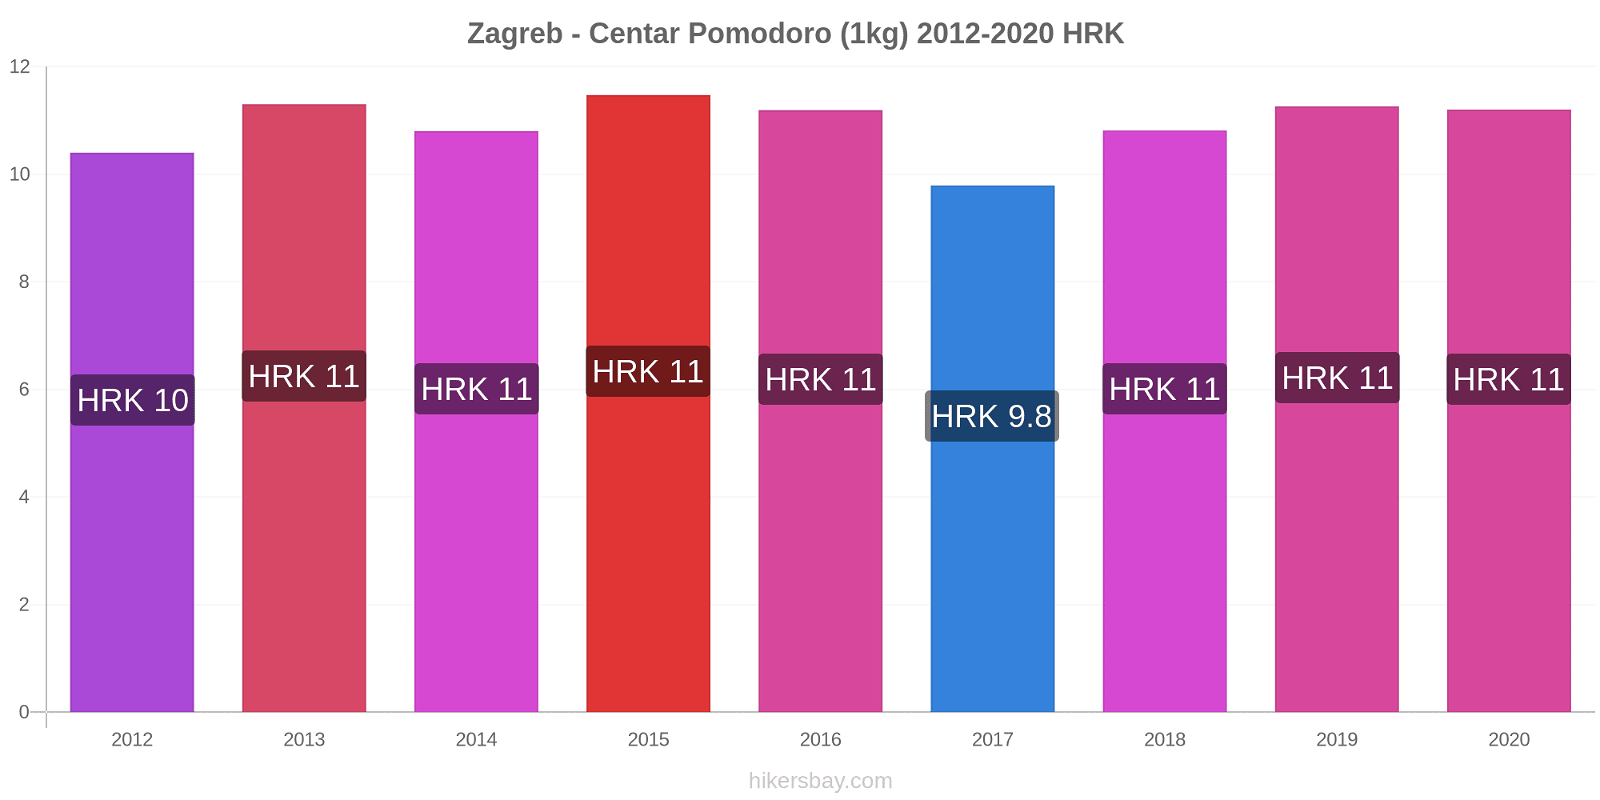 Zagreb - Centar variazioni di prezzo Pomodoro (1kg) hikersbay.com